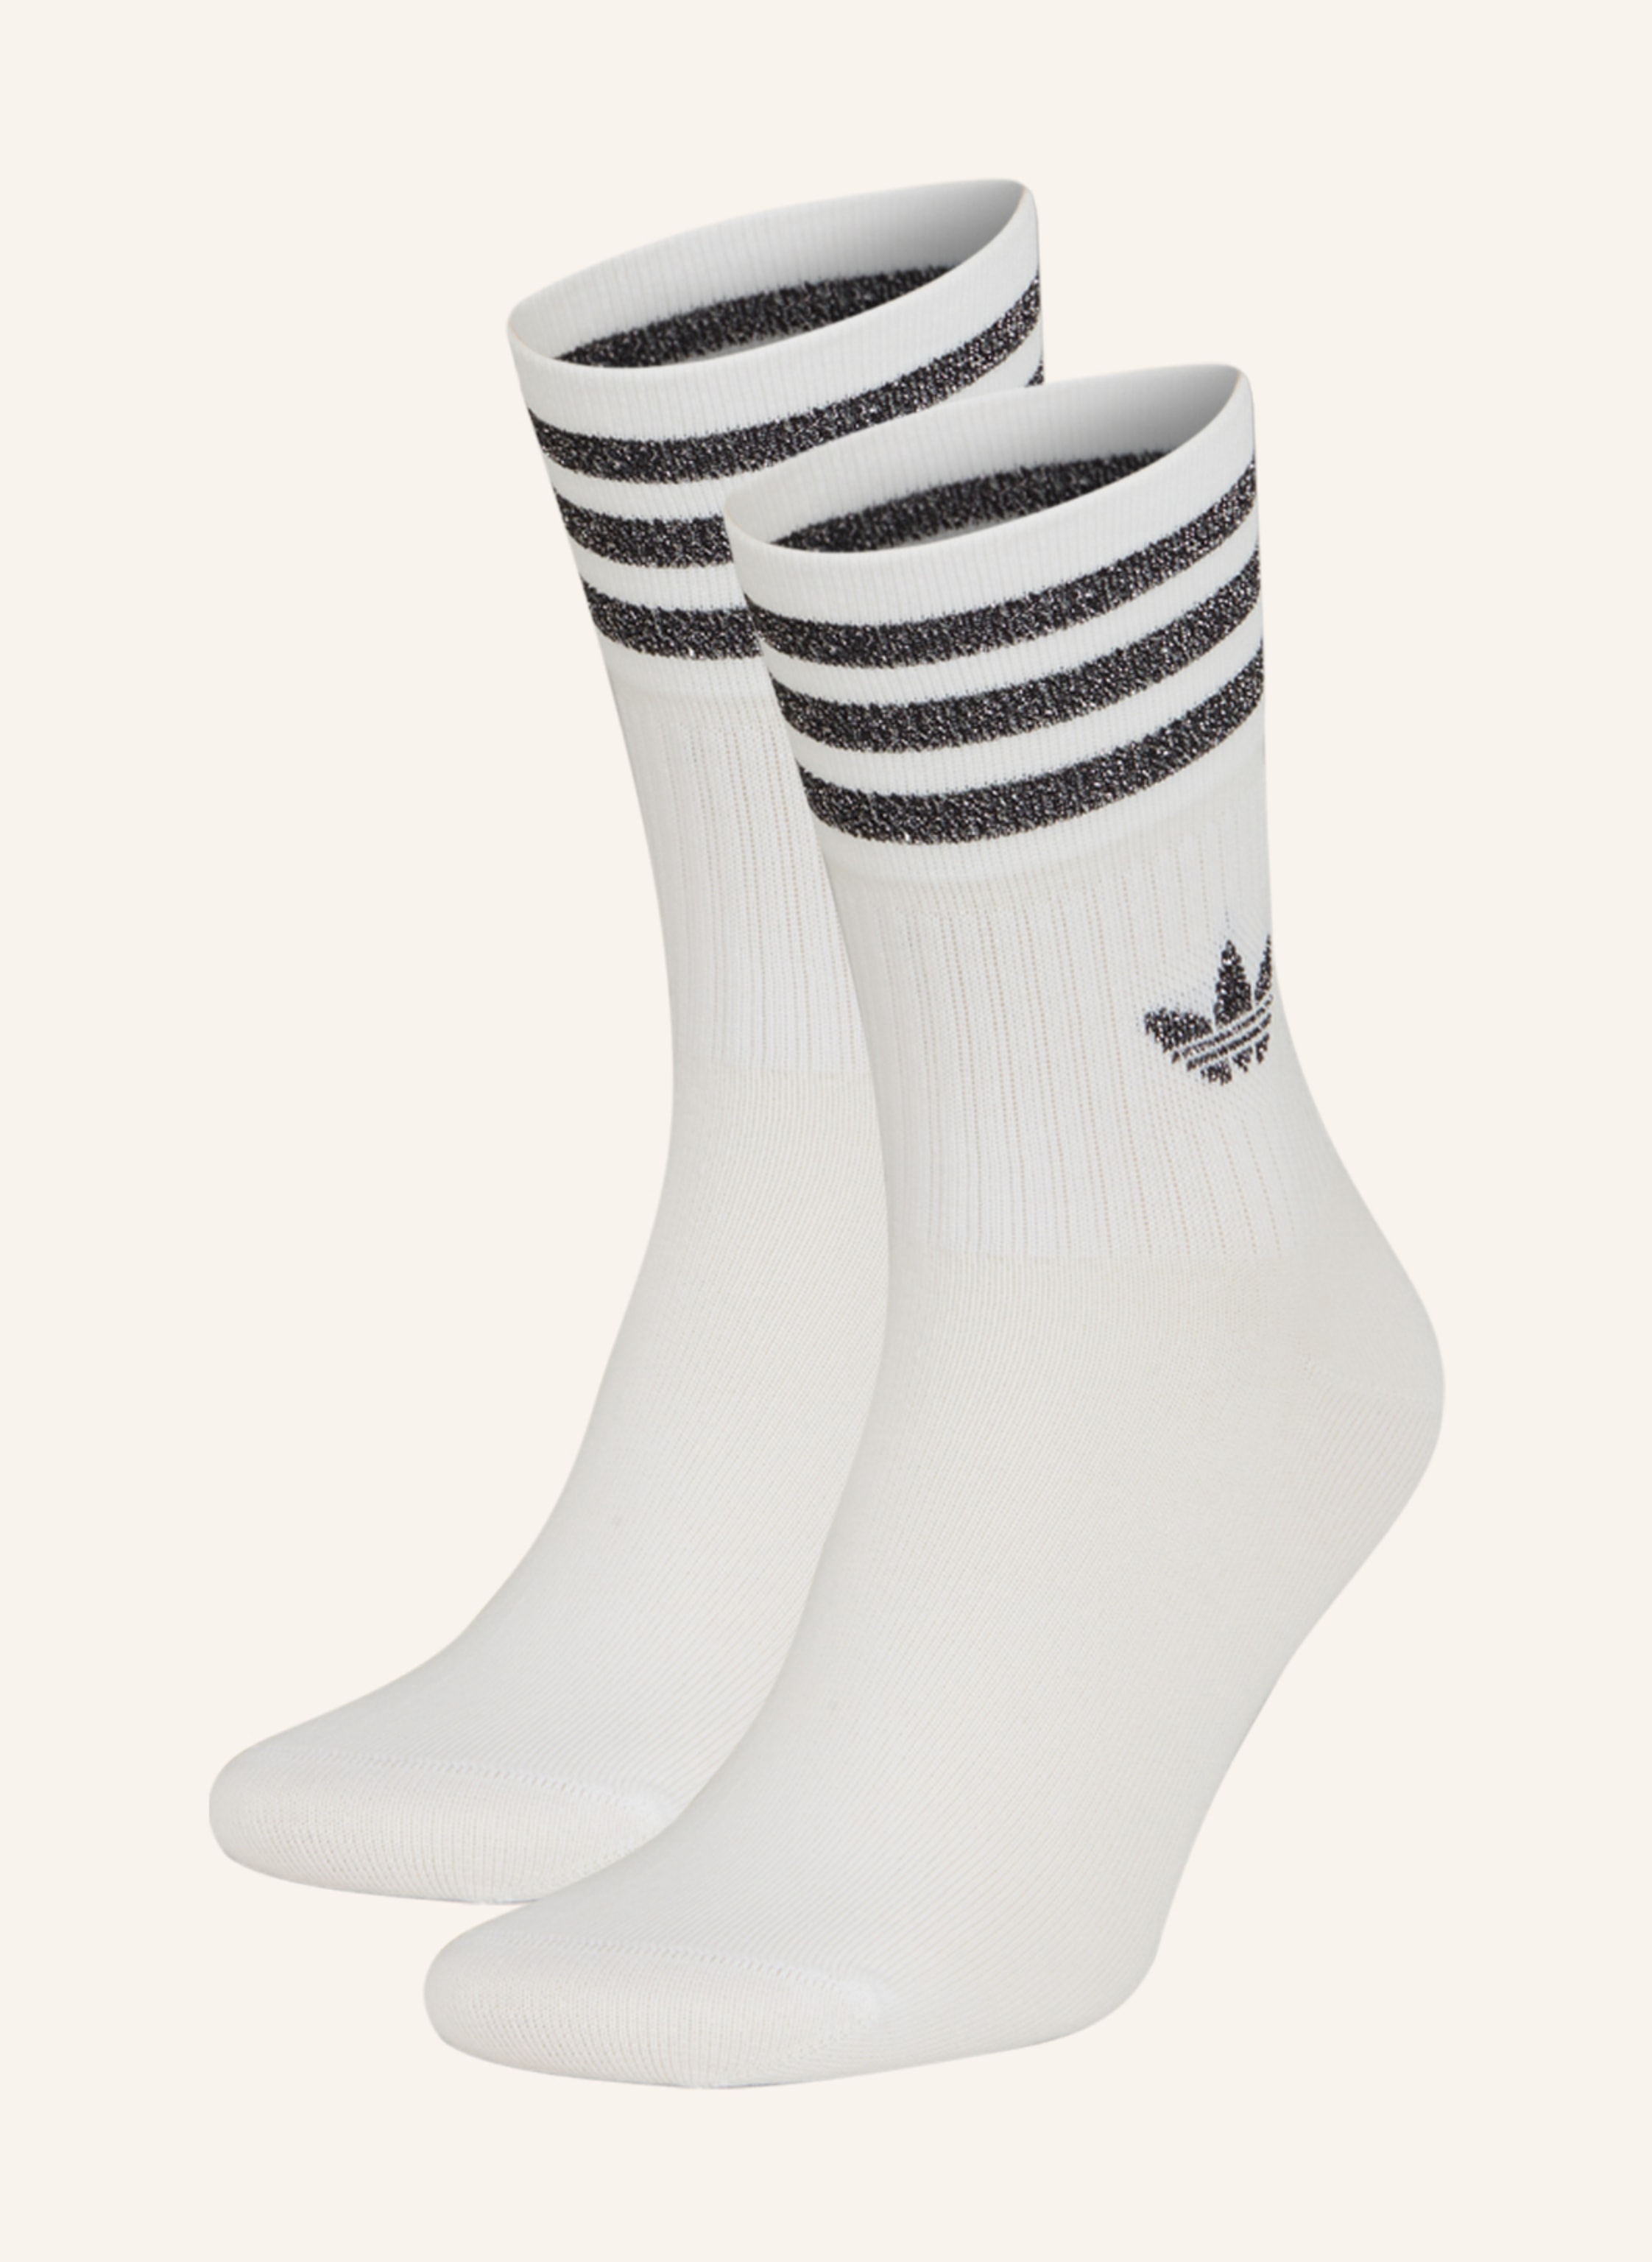 adidas Originals 2er-Pack Socken in MID-CUT Glitzergarn white/gretwo/black CREW mit GLITTER